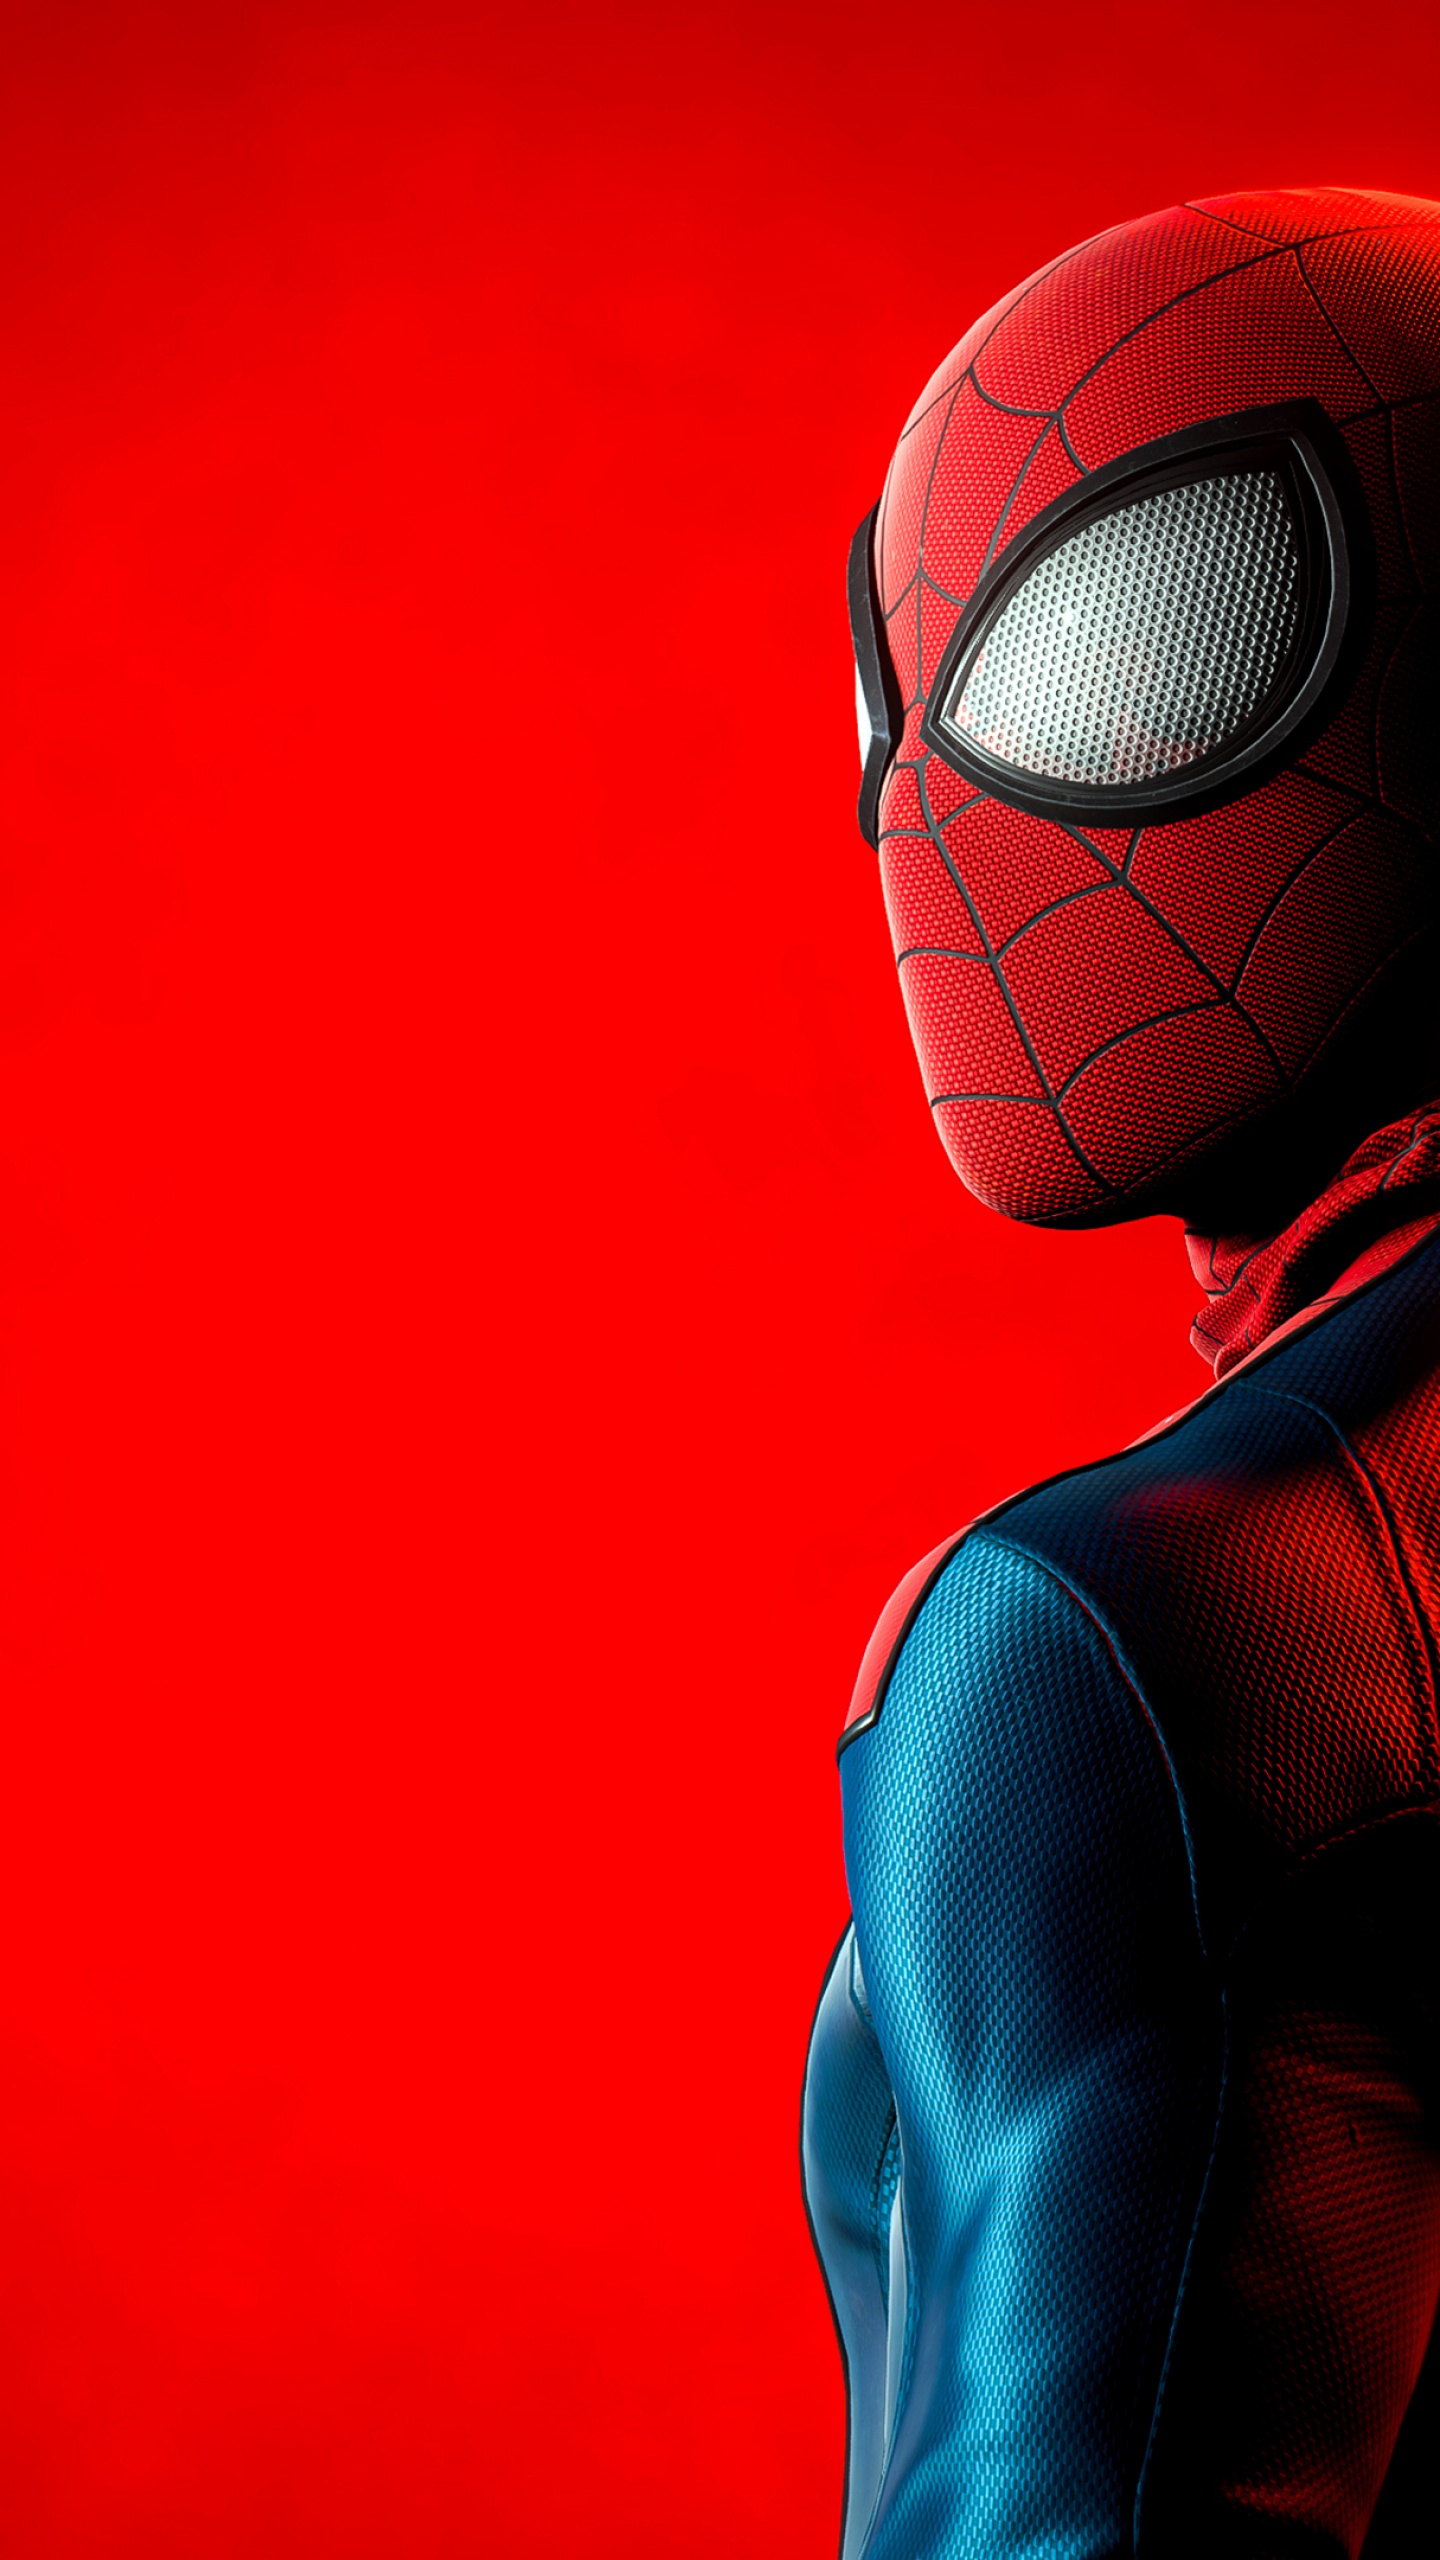 Hình nền Spider-Man sẽ đưa bạn vào thế giới của người anh hùng mang sắc đỏ và xanh lá. Với những họa tiết độc đáo và sắc nét, chắc chắn sẽ làm mãn nhãn các fan của siêu anh hùng này.